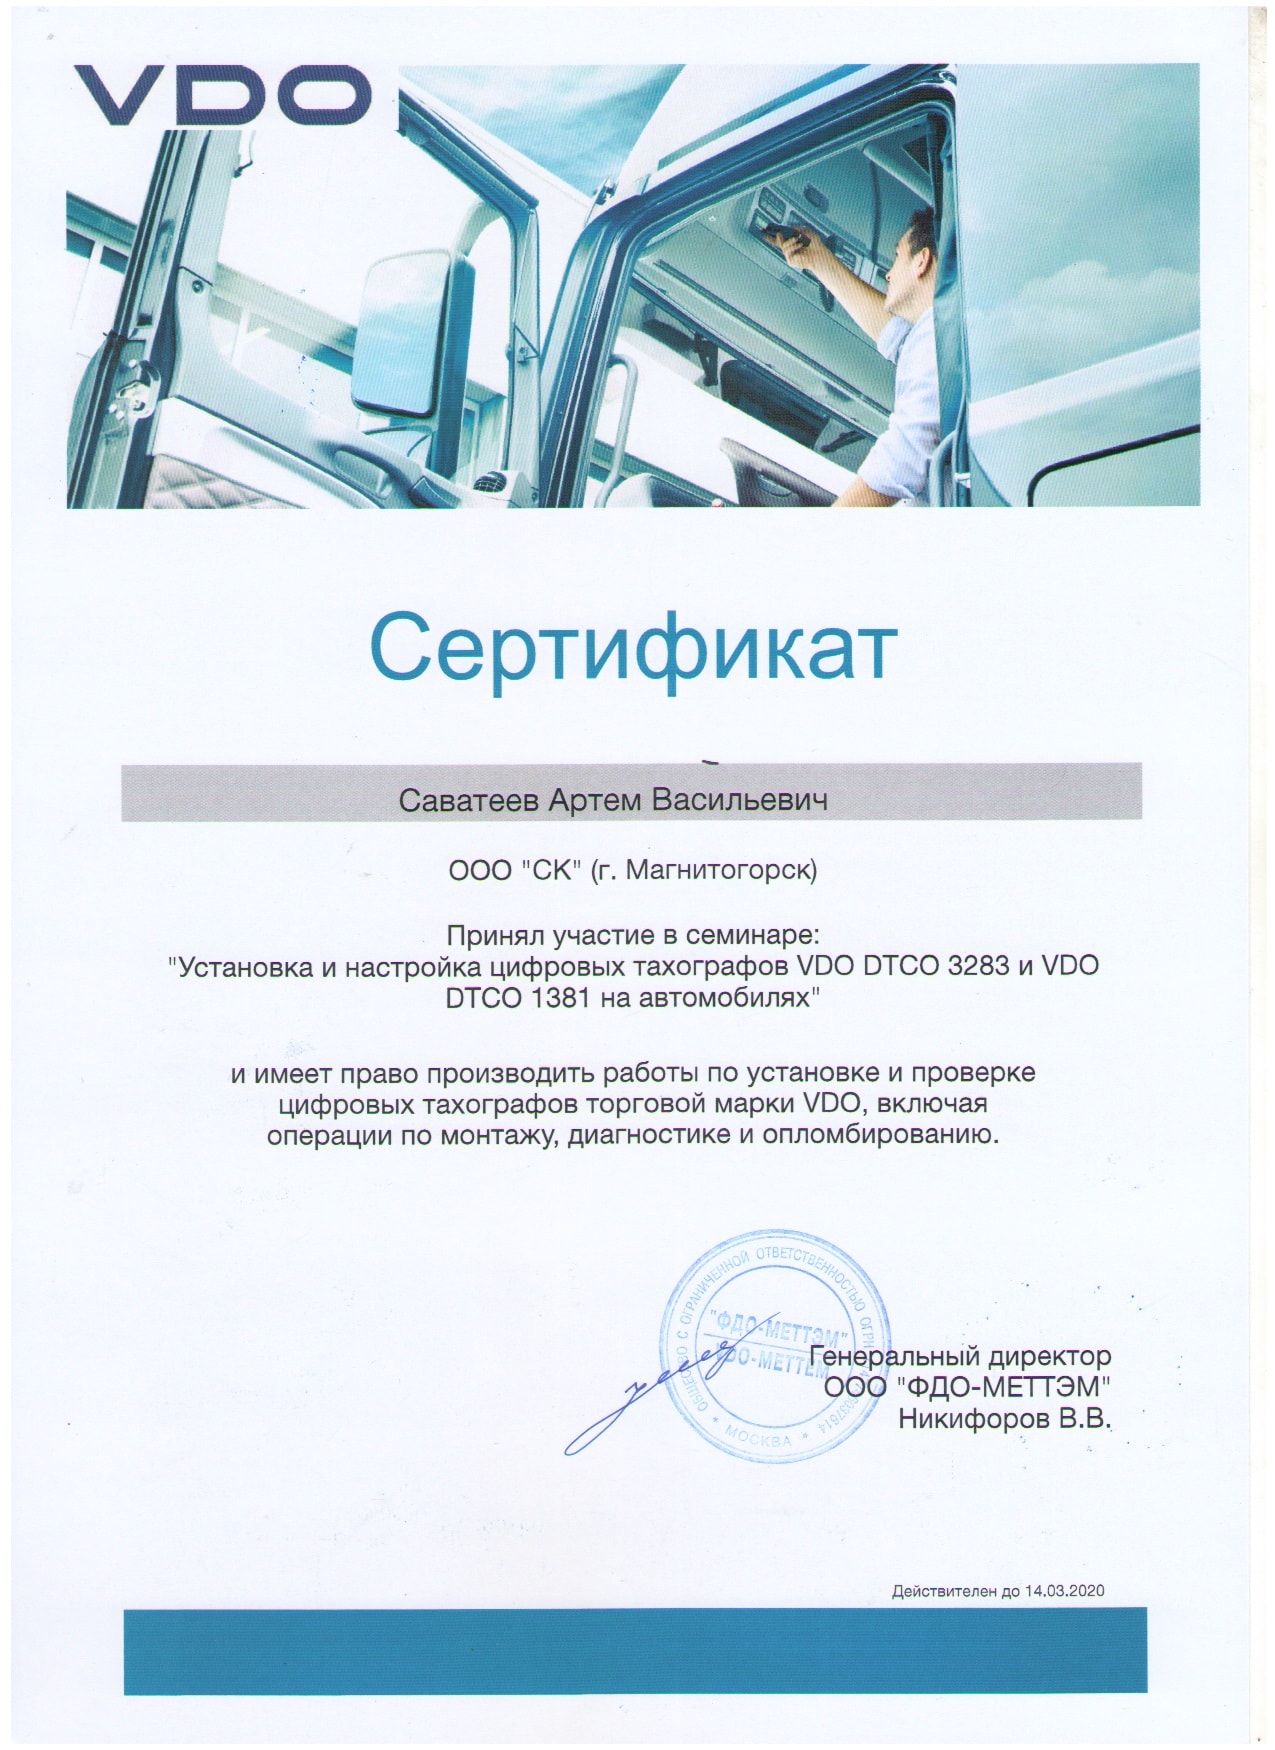 Сертификат на уствновку VDO-min